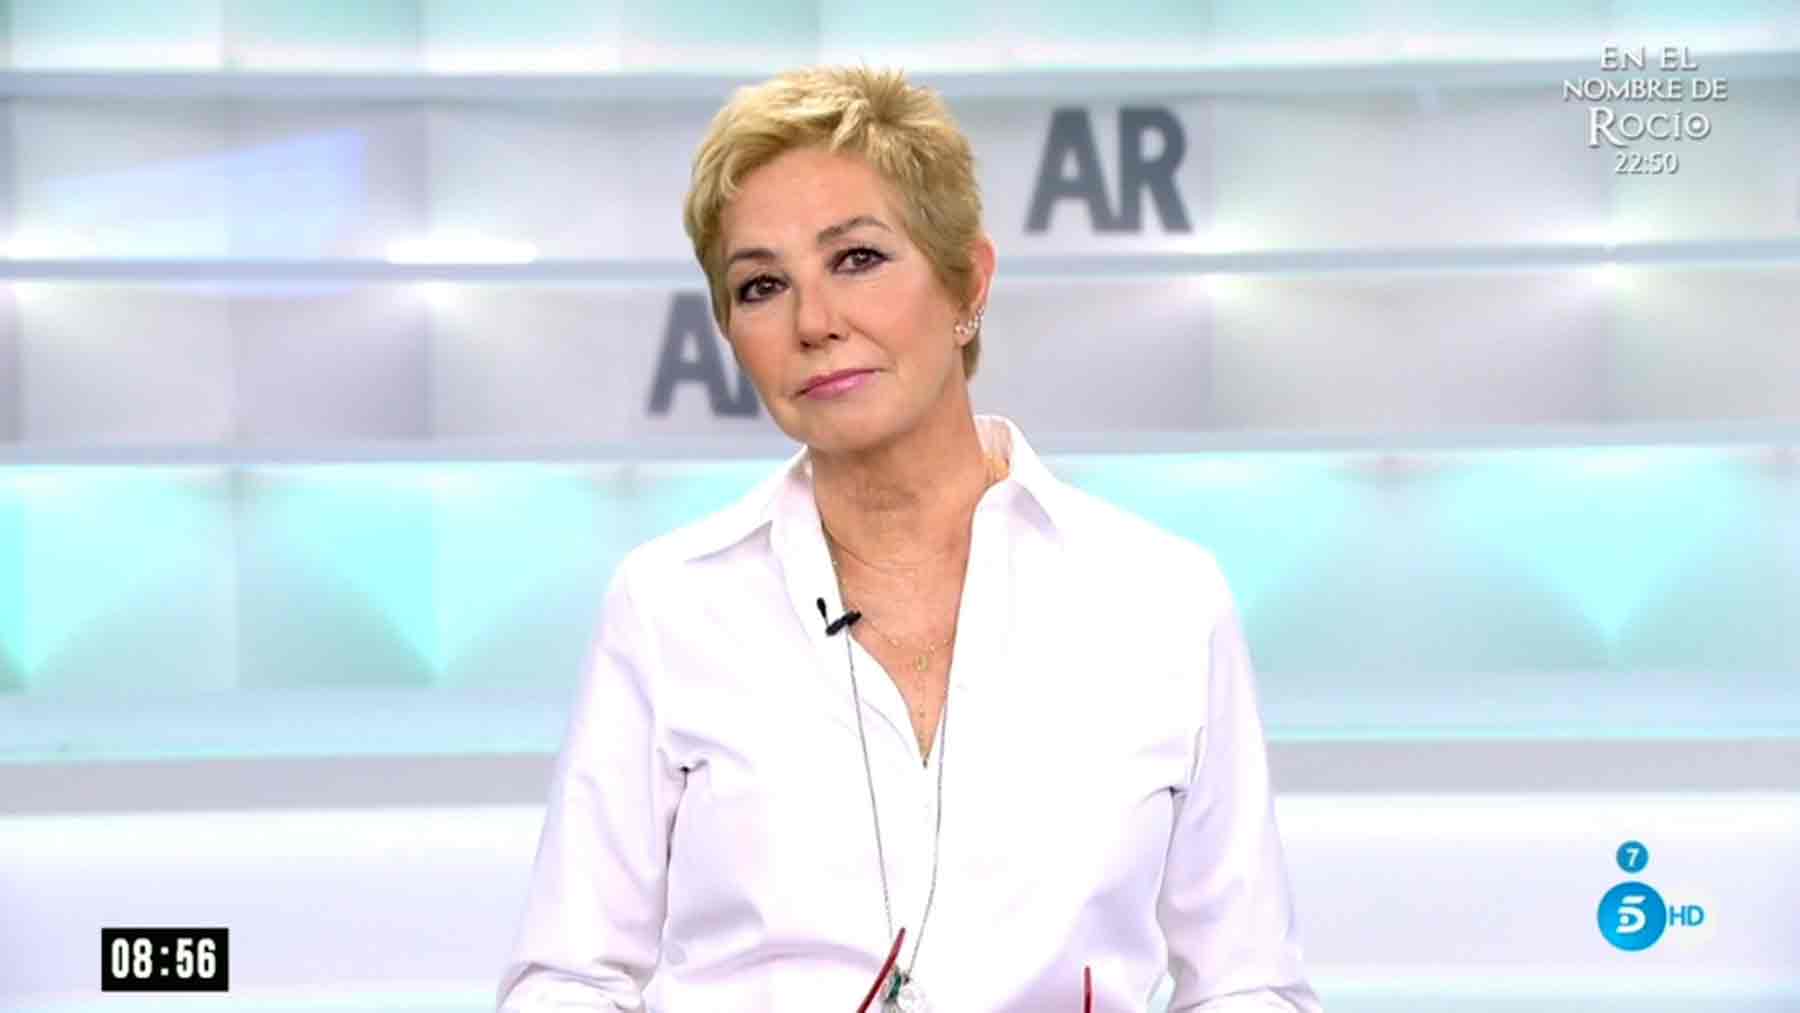 Ana Rosa Quintana